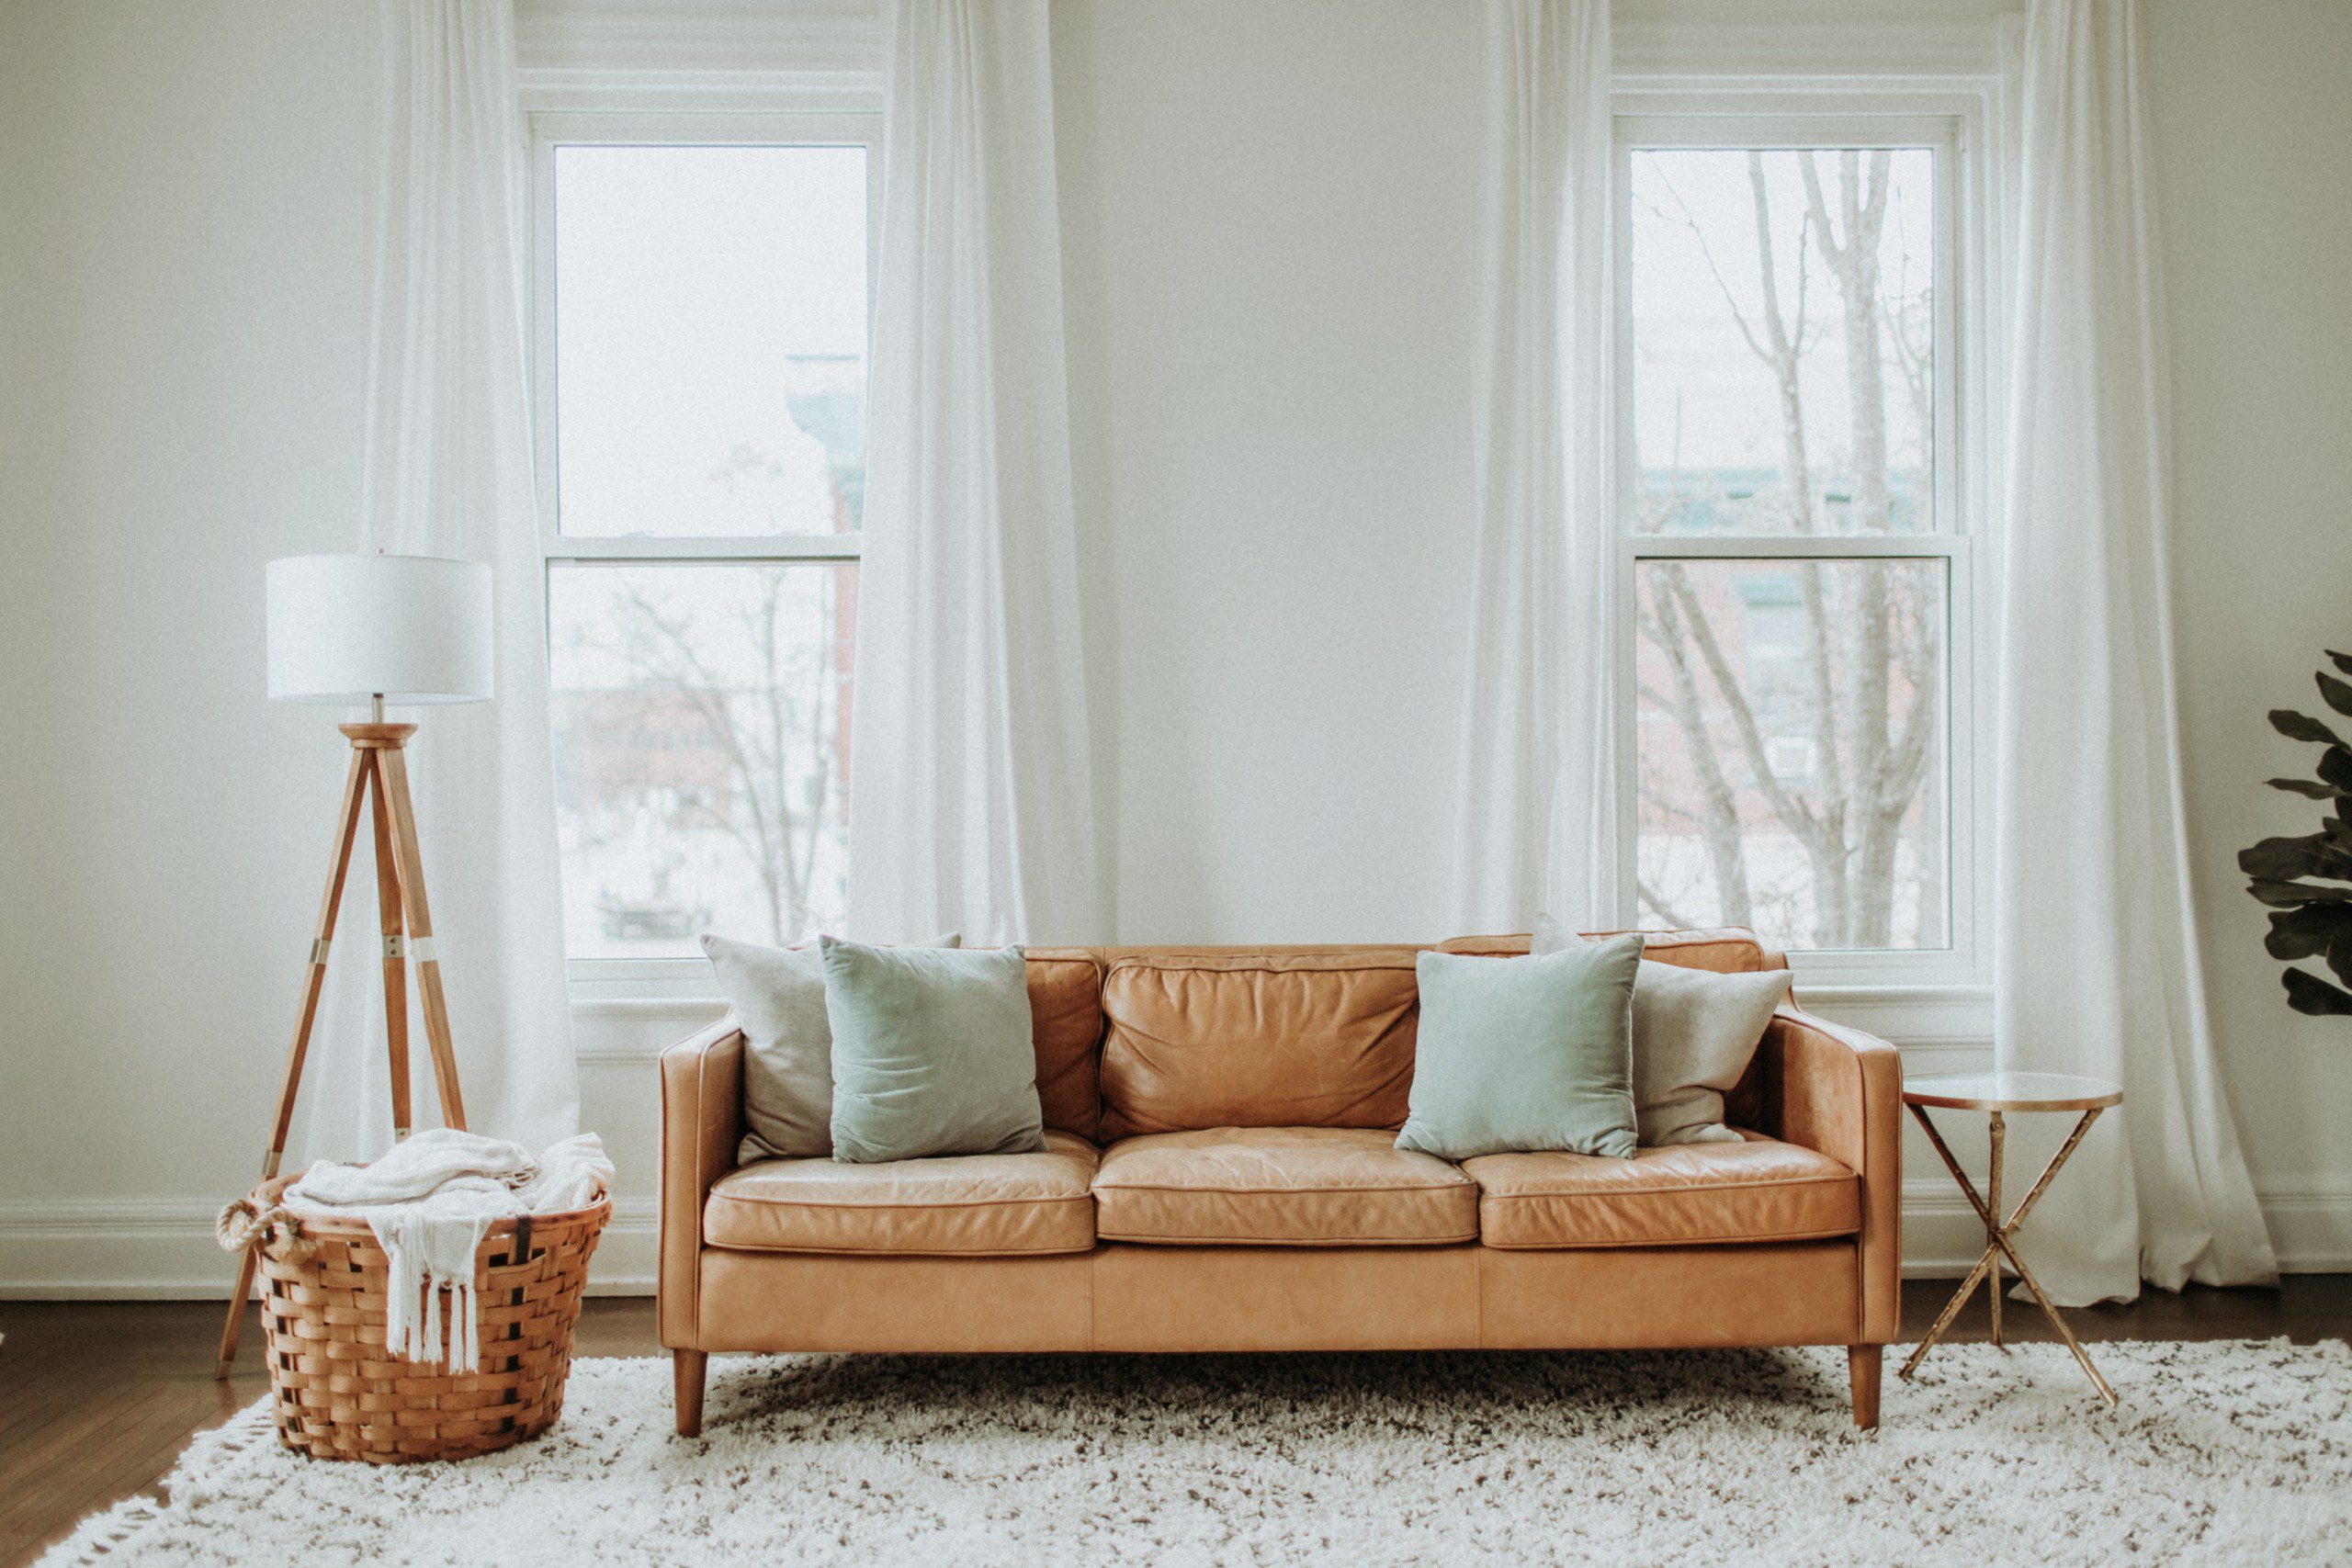 Imagem de uma sala decorada com luminária, sofá na cor mostarda e um tapete neutro felpudo.